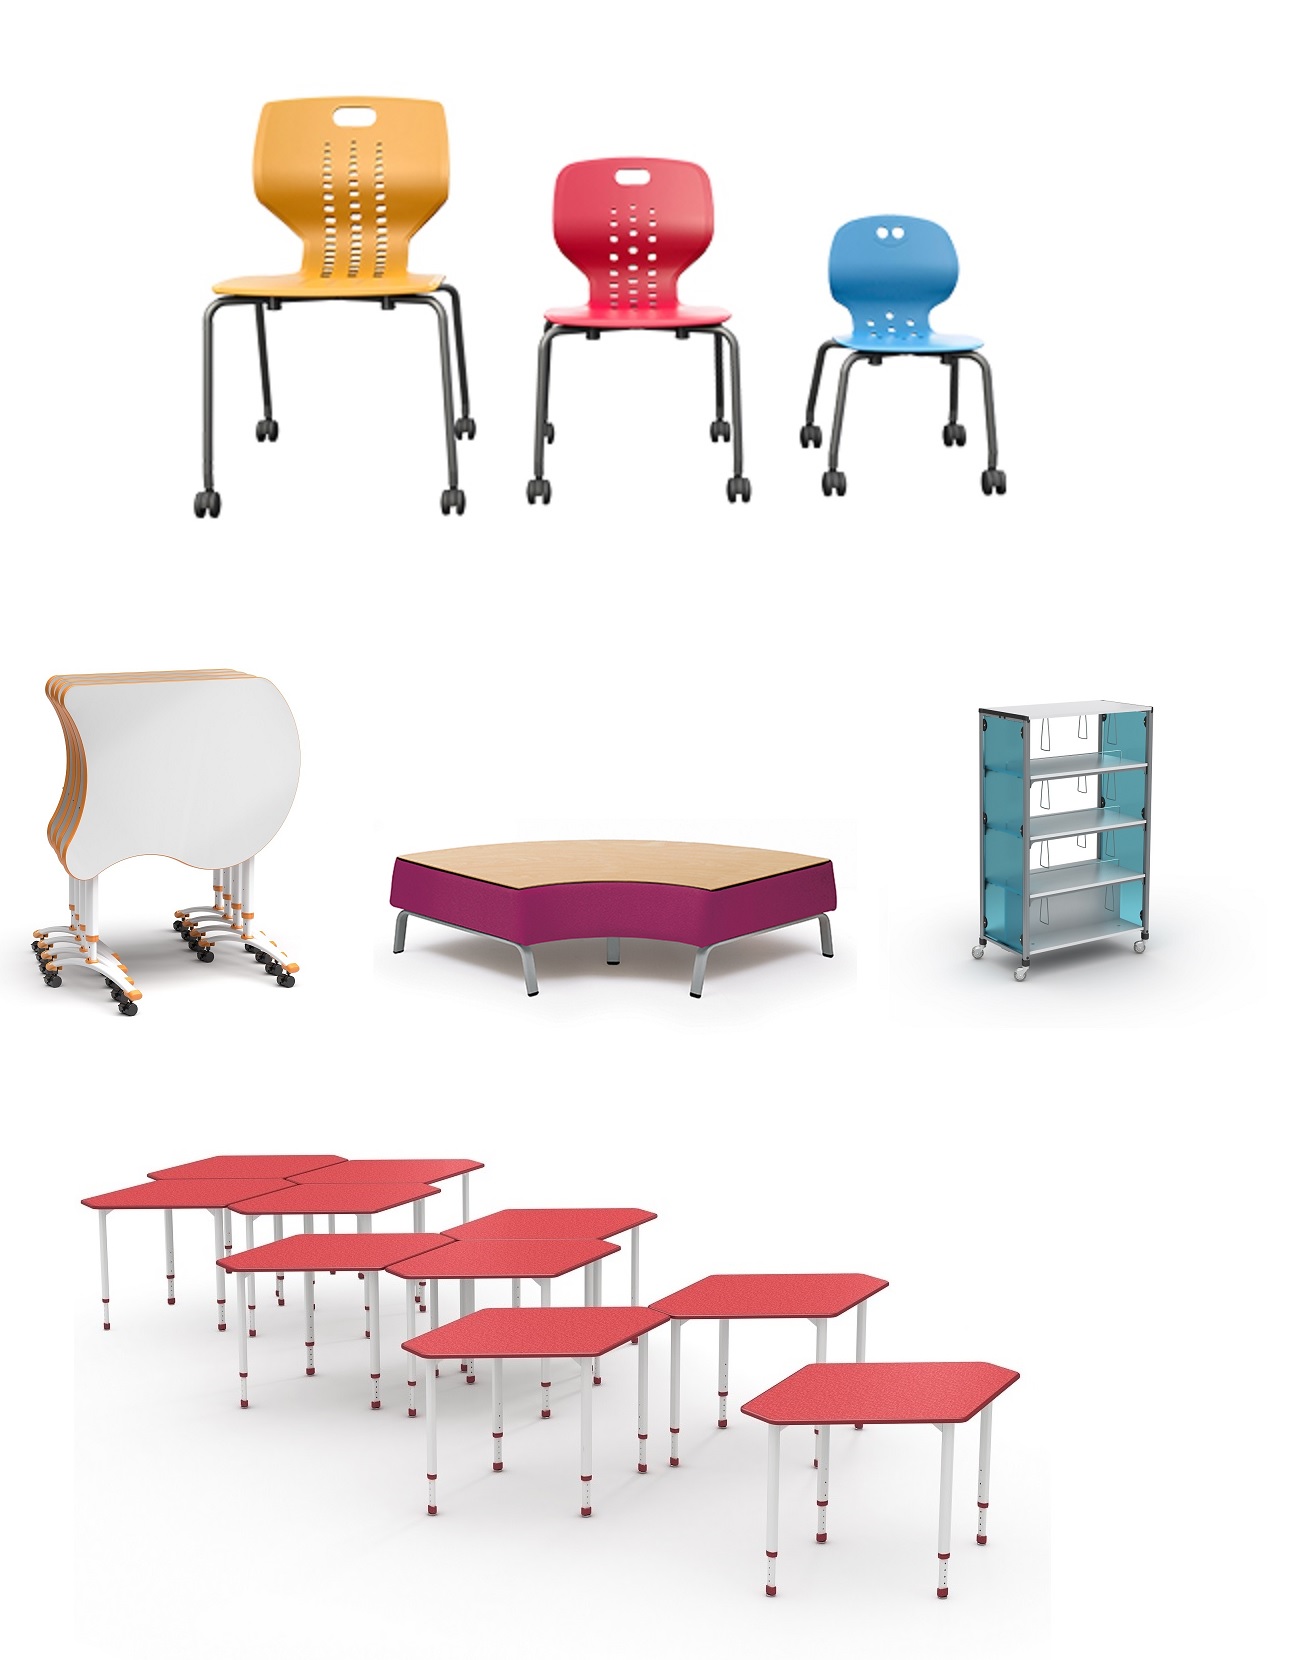 Furniture-Image-Gallery-Paragon-Furniture